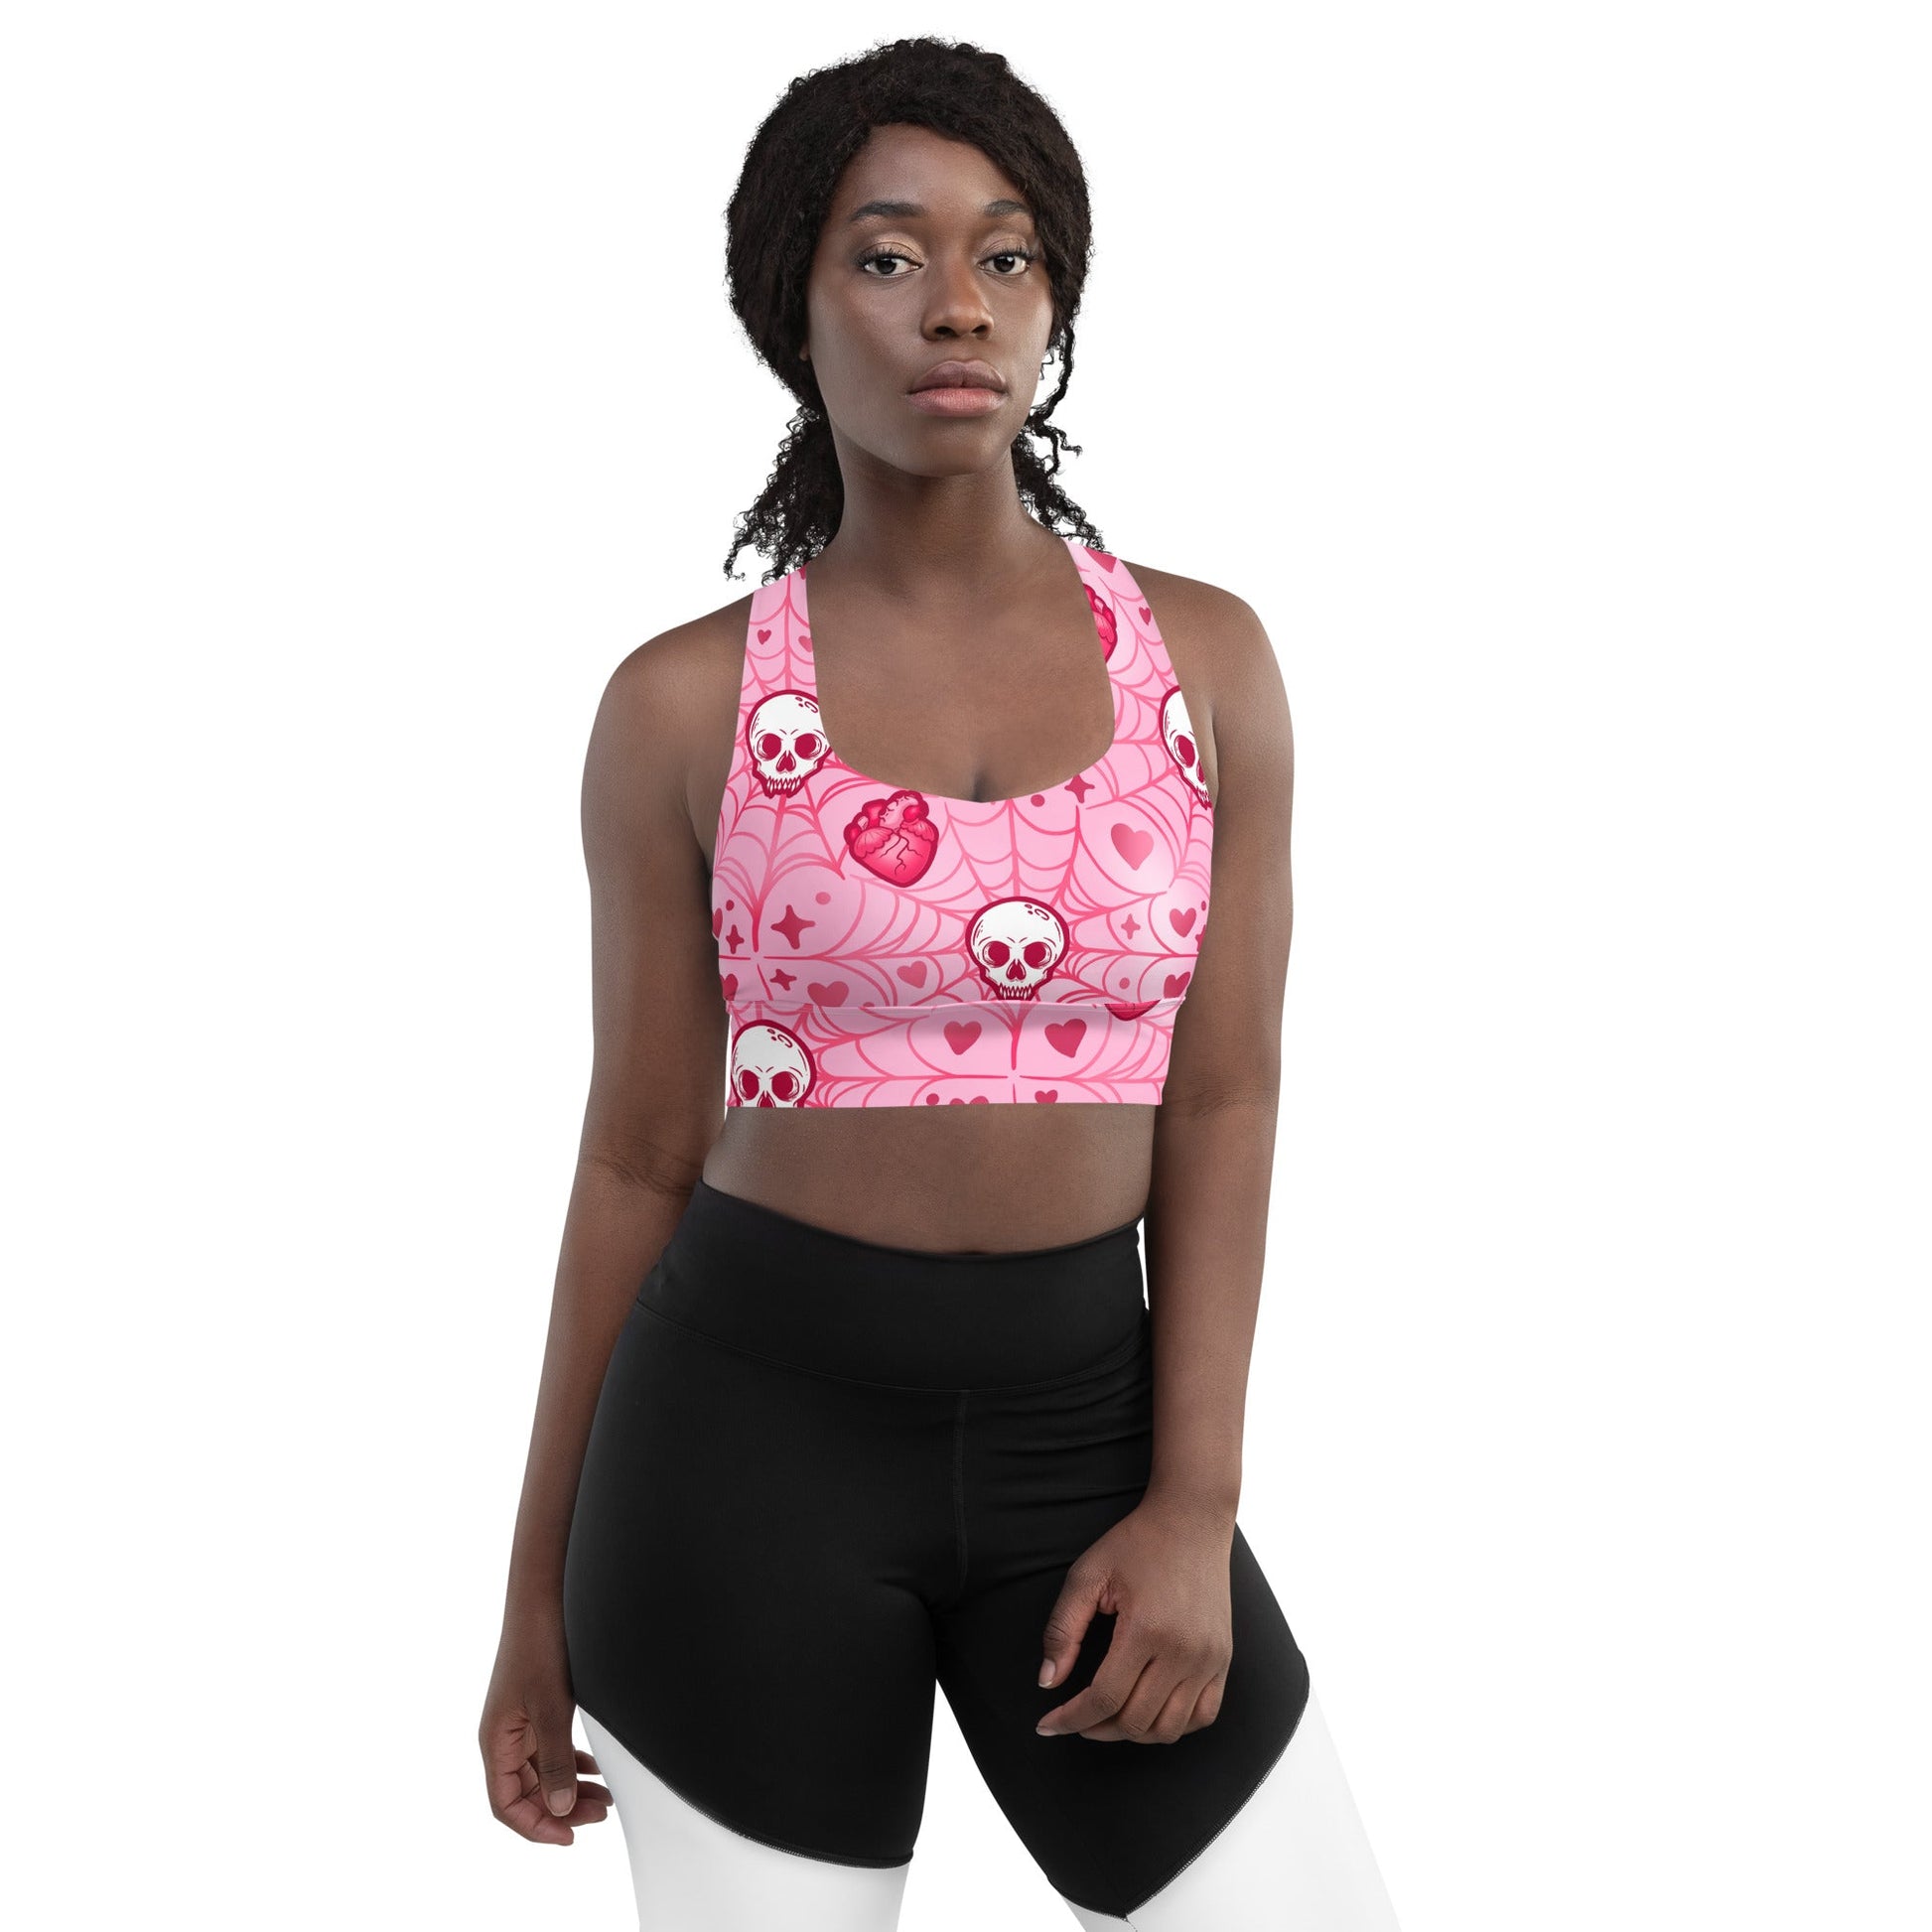 Pretty in Pink Heart & Skull Sports Bra: Fitness Ready Streetwear Chic!